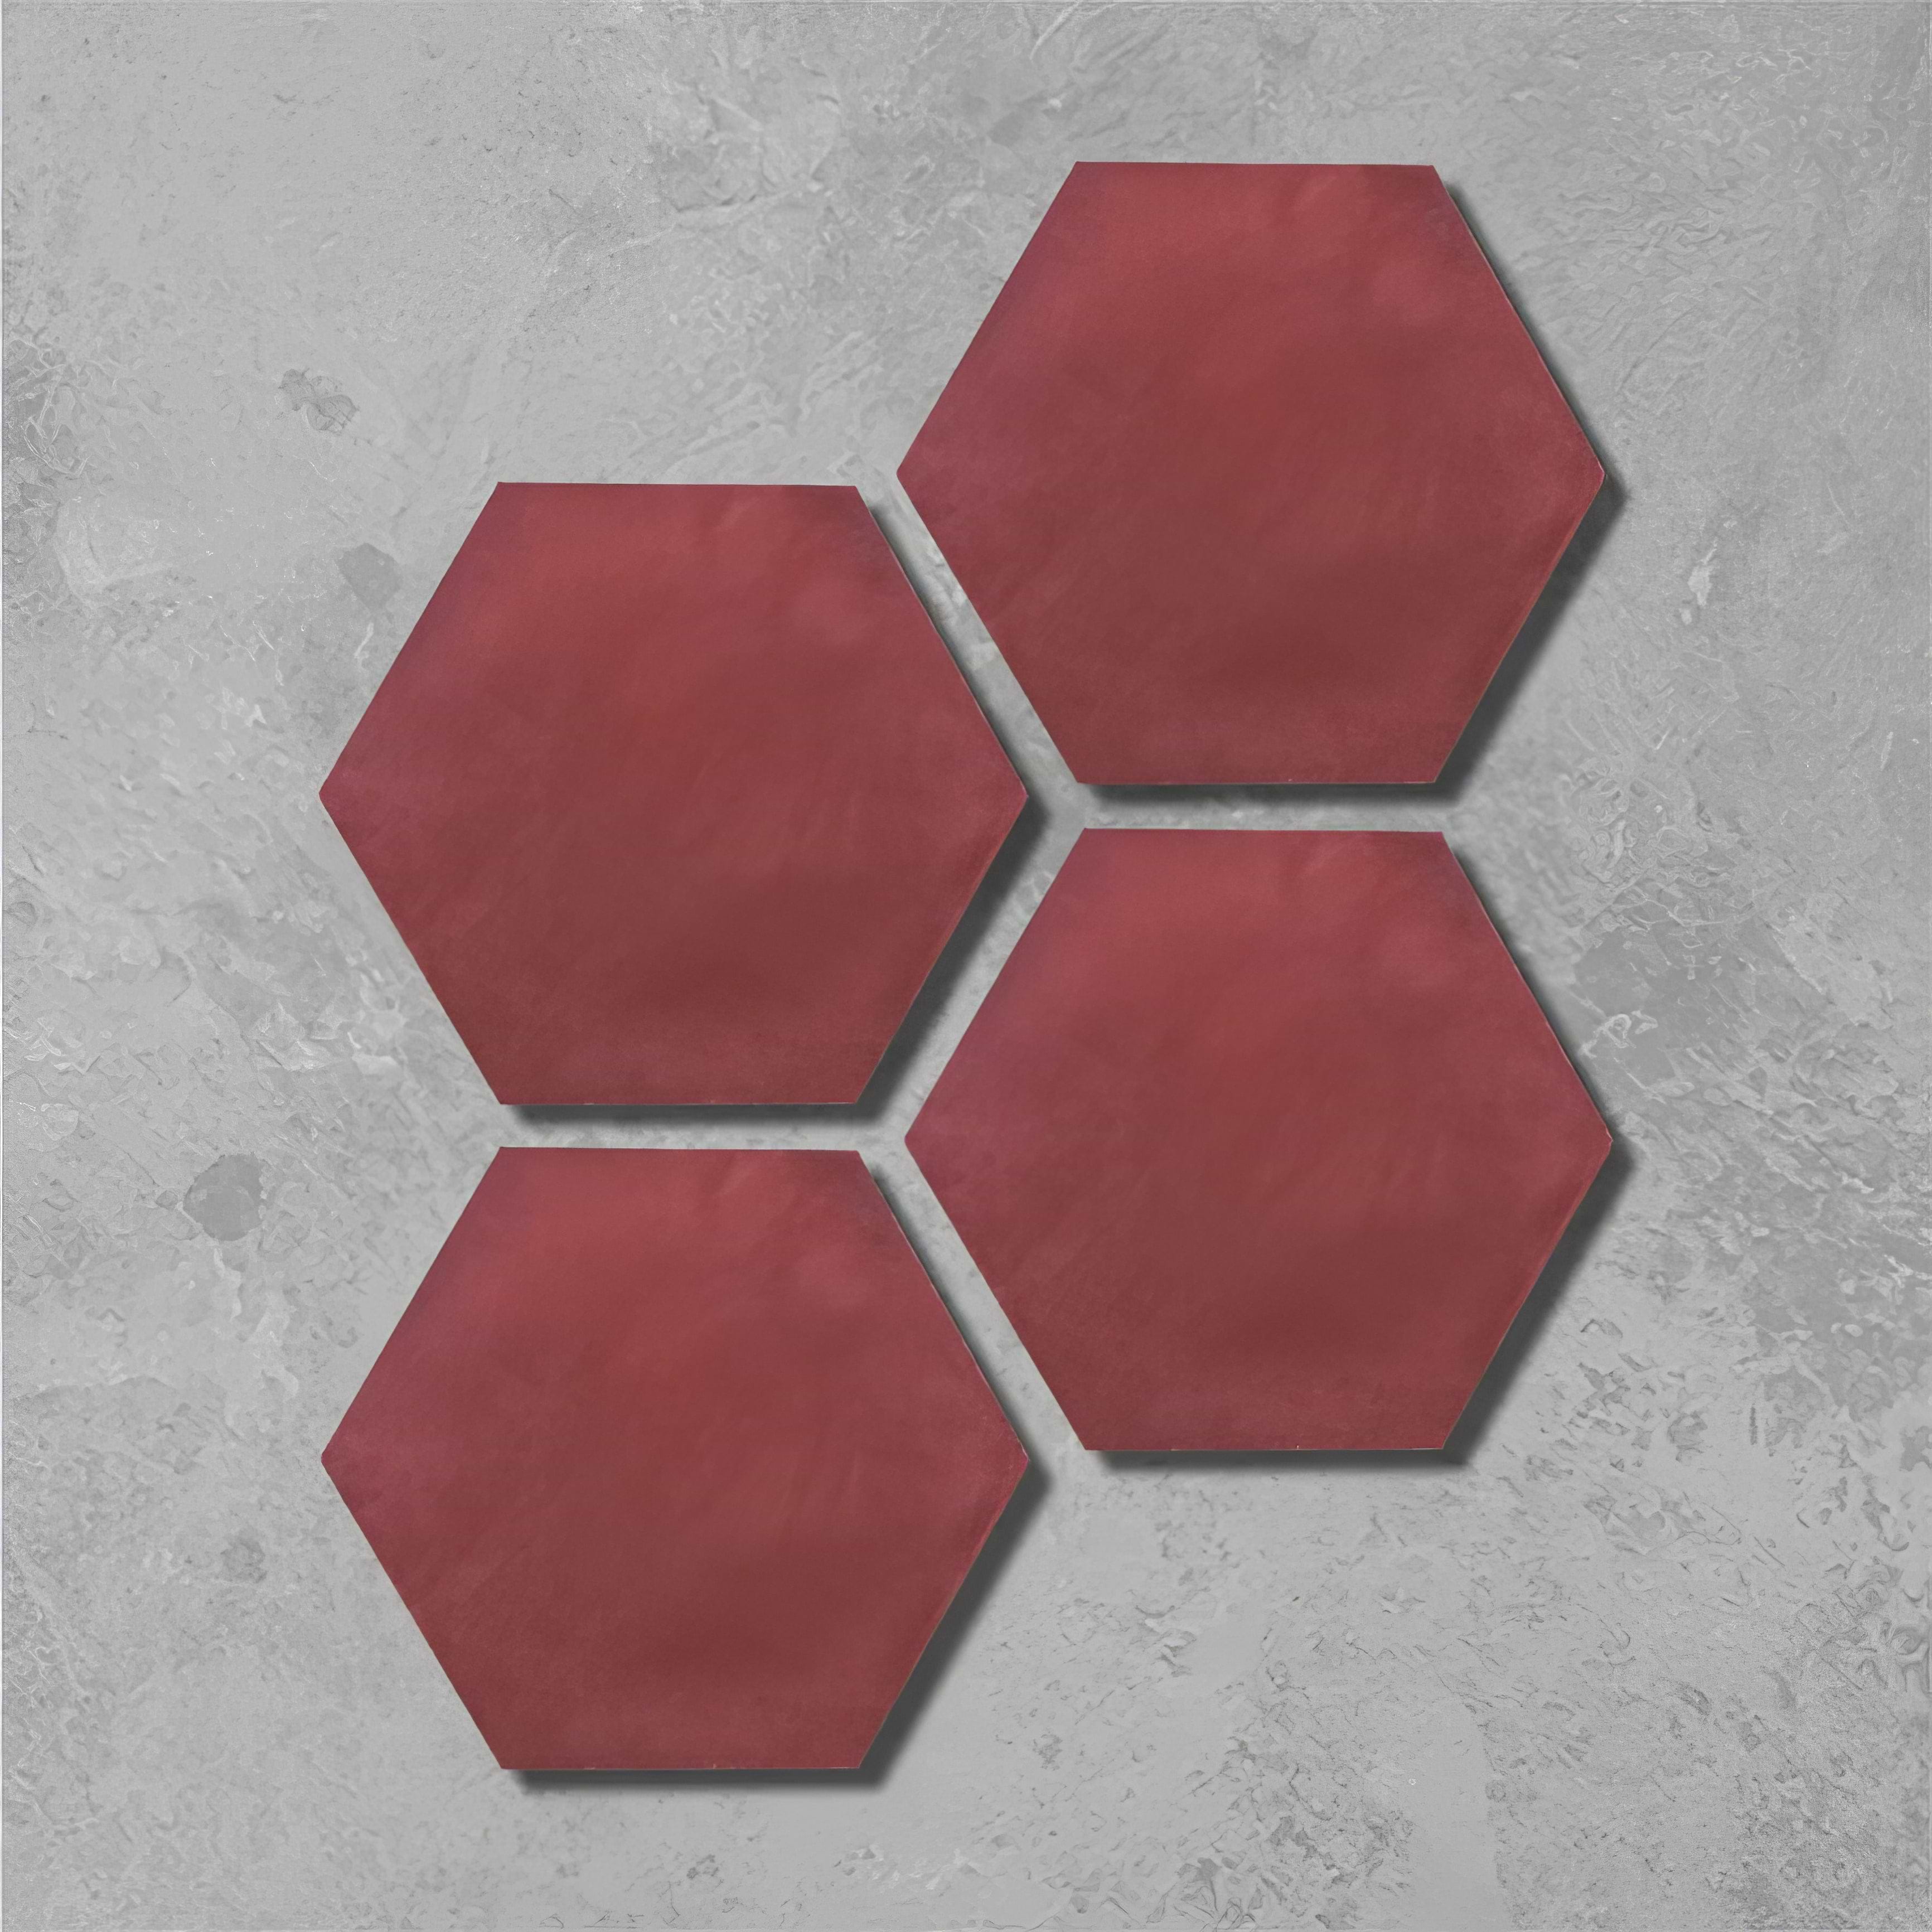 Garnet Hexagonal Tile - Hyperion Tiles